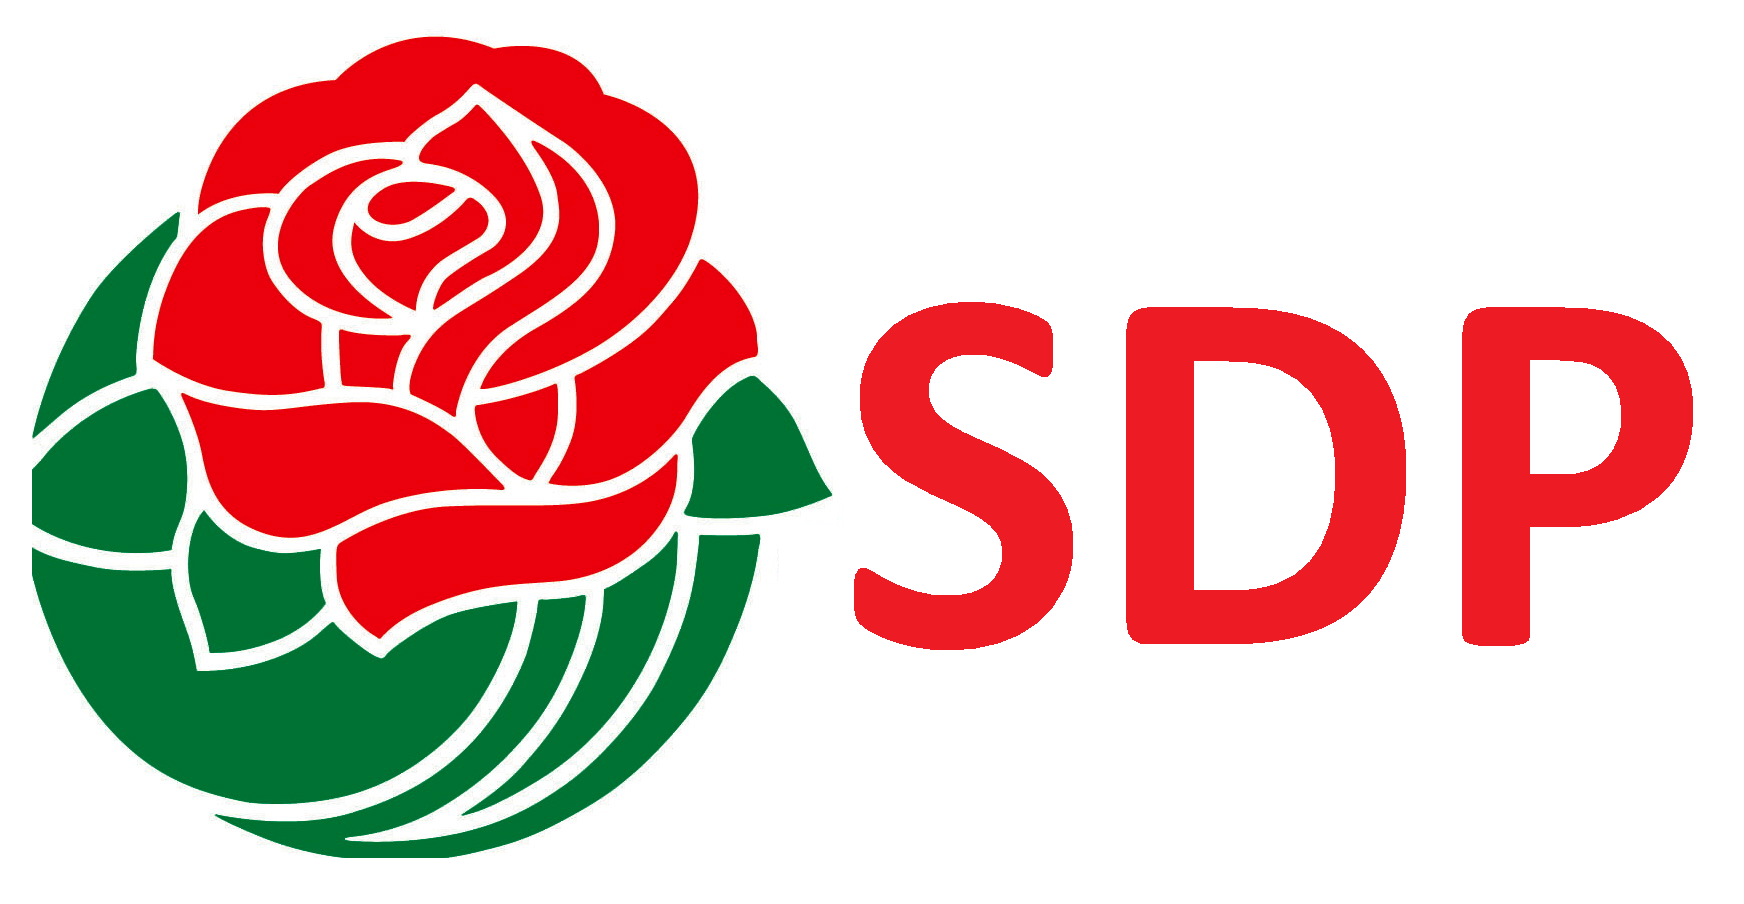 Socialist Logo - Socialism Logos